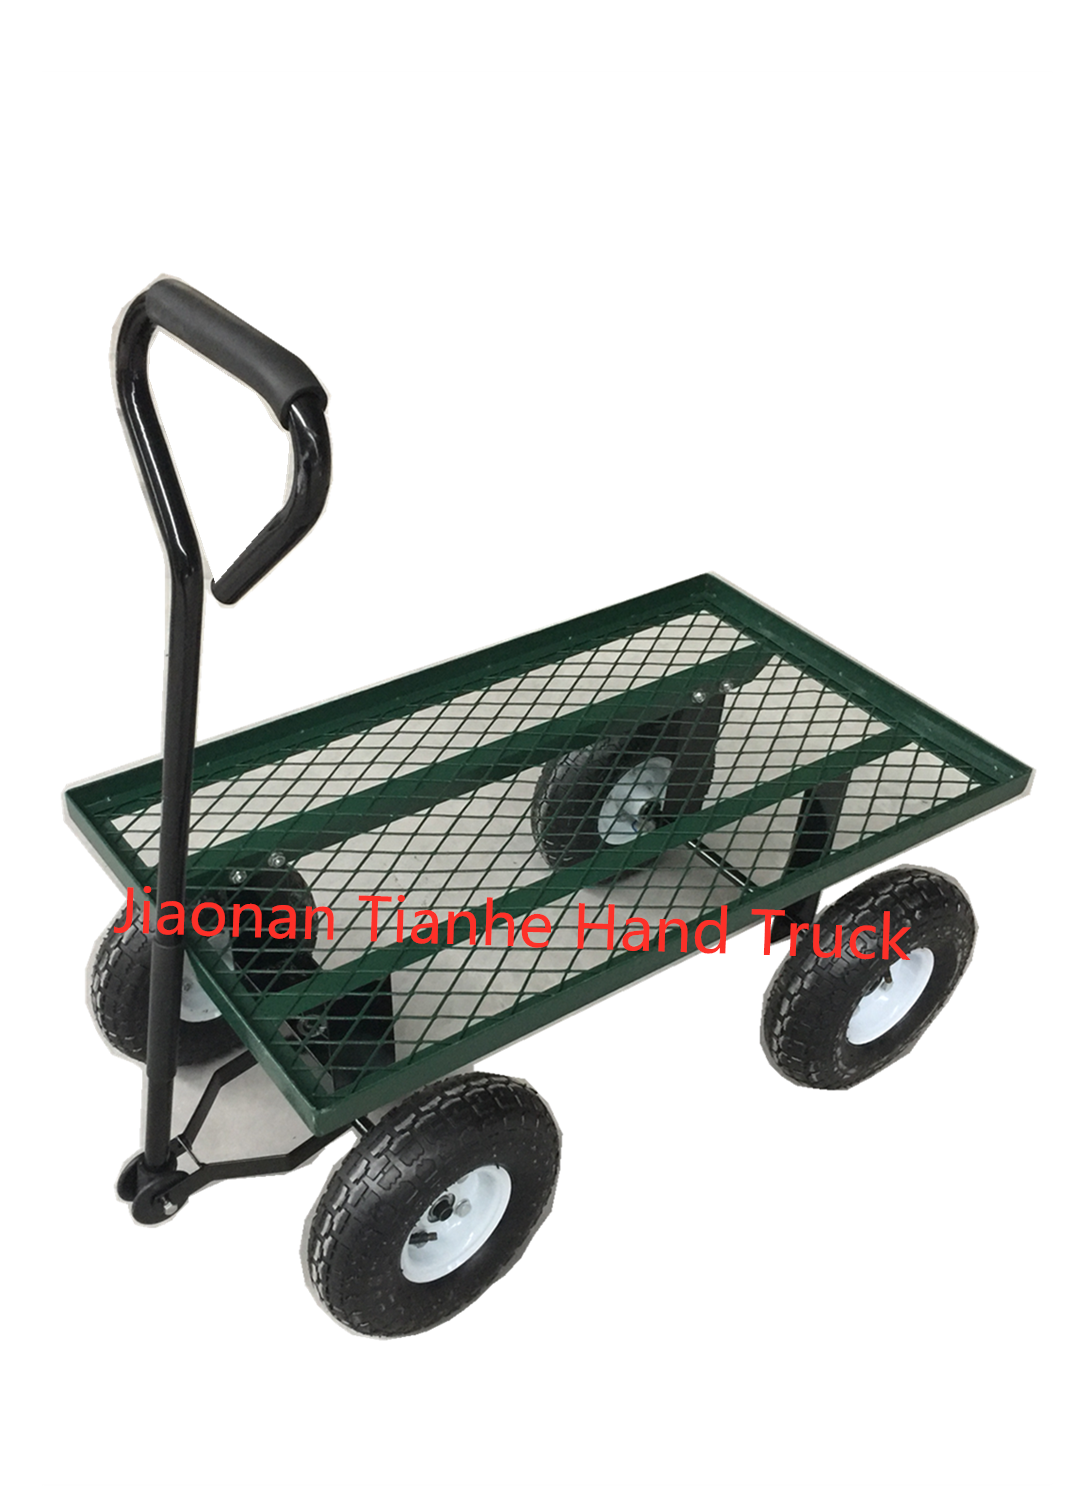 lightweight mesh cart